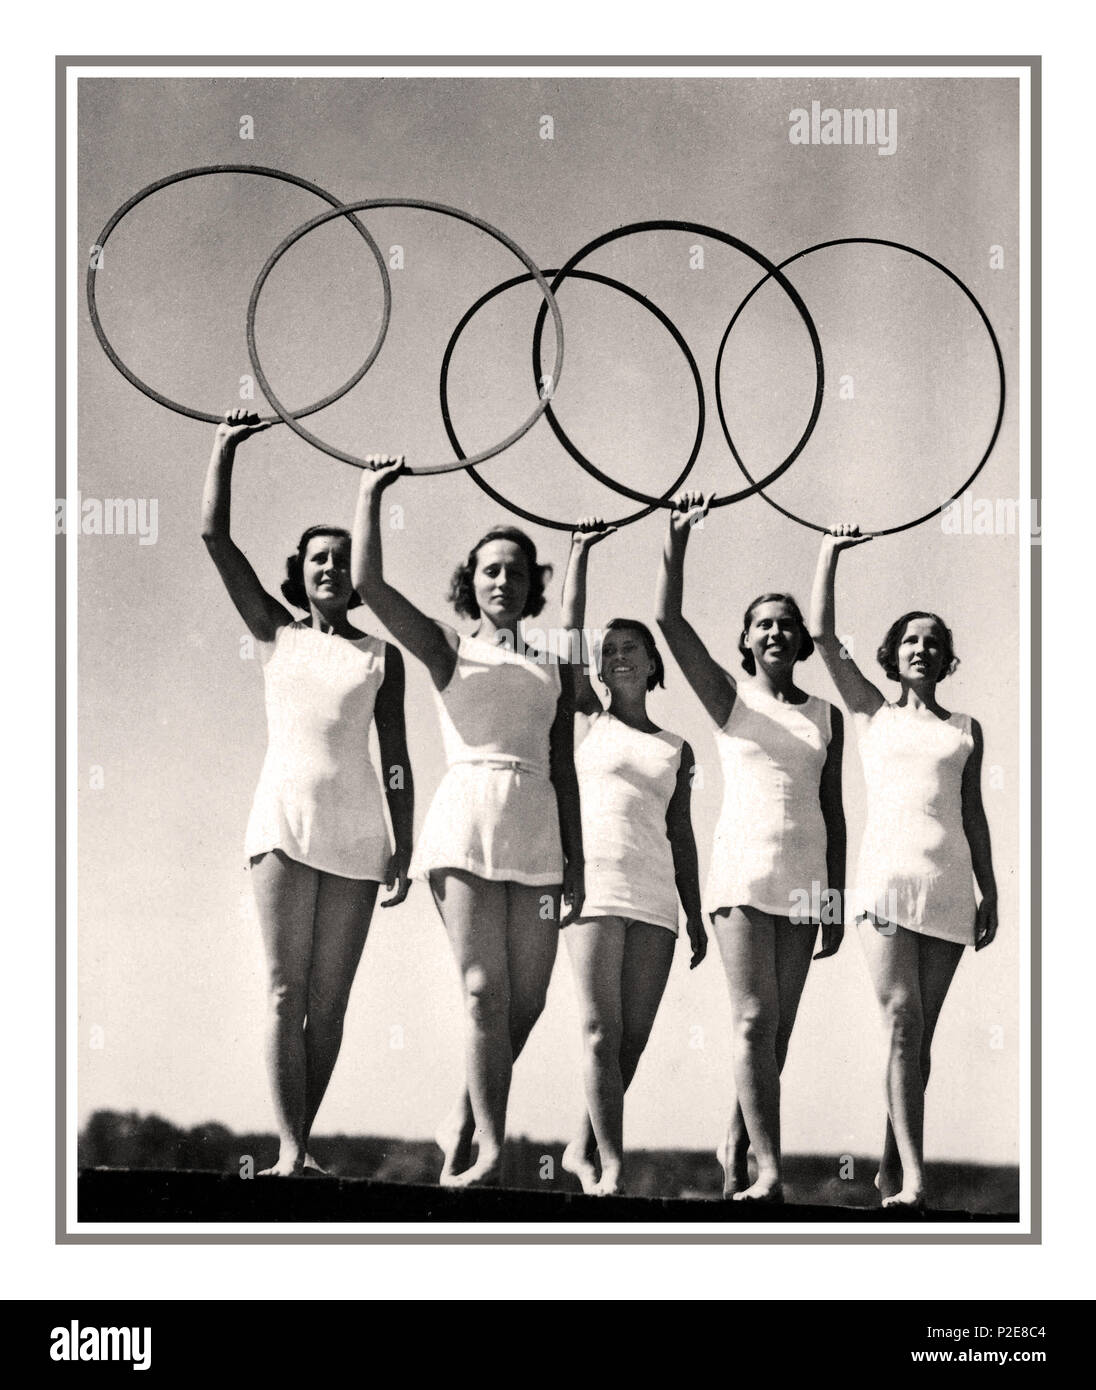 Giochi olimpici del 1936, Berlino, Germania gli anelli olimpici tenuti in toto da cinque giovani sportivi 1936 OLIMPIADI ESTIVE, BERLINO, scheda fotografica che mostra i ballerini biondi aryan con gli anelli olimpici, STADIO Olimpico DI BERLINO AGOSTO 13th 1936 Germania Foto Stock